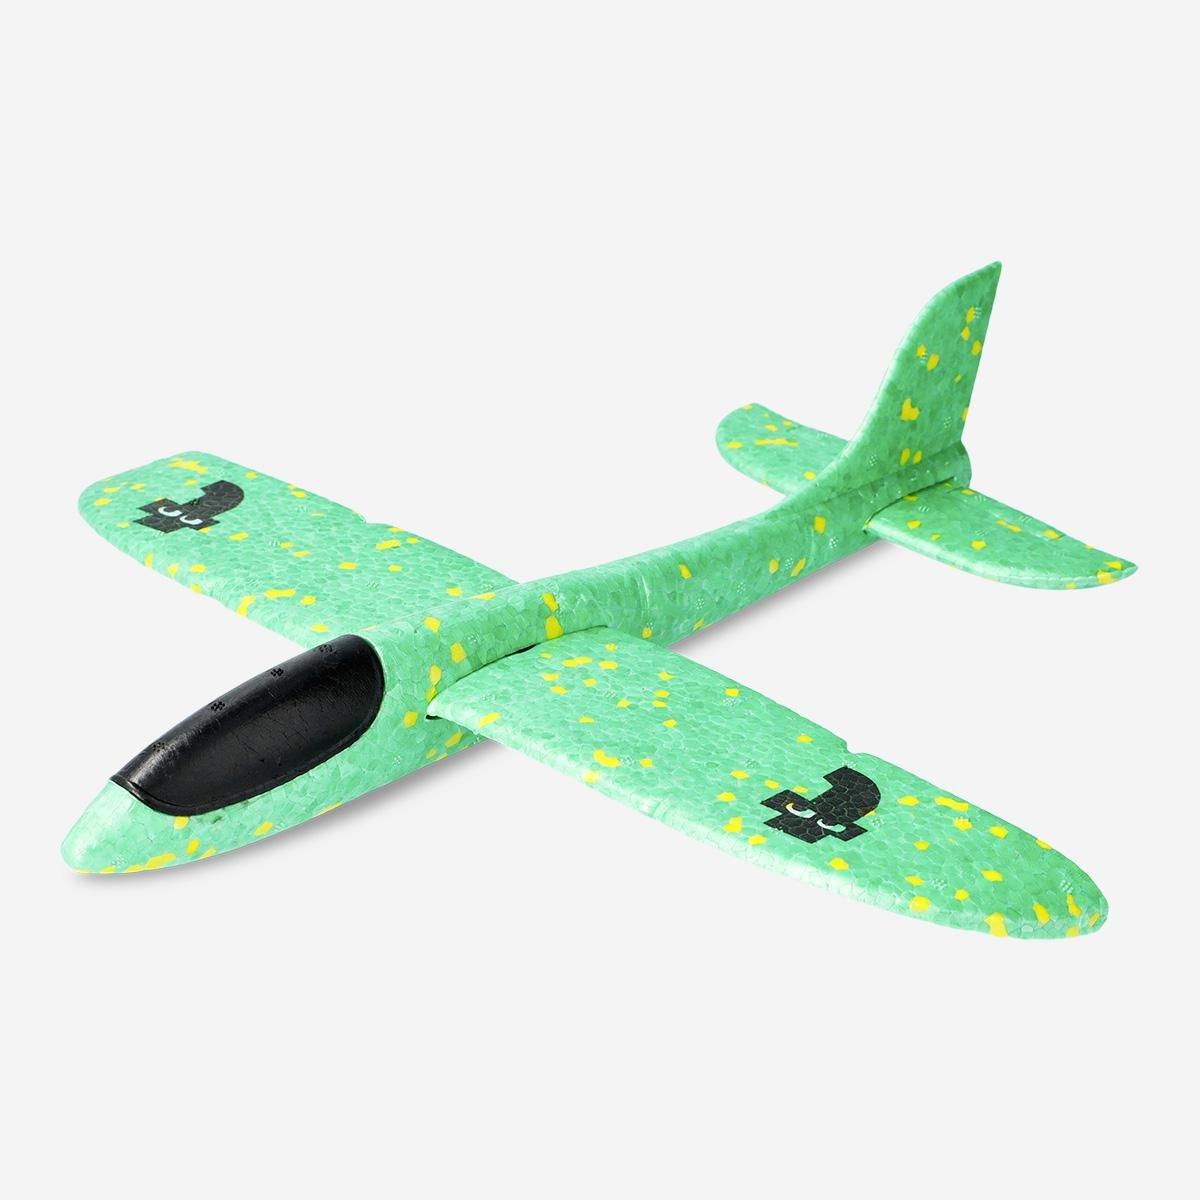 Green lightweight plane